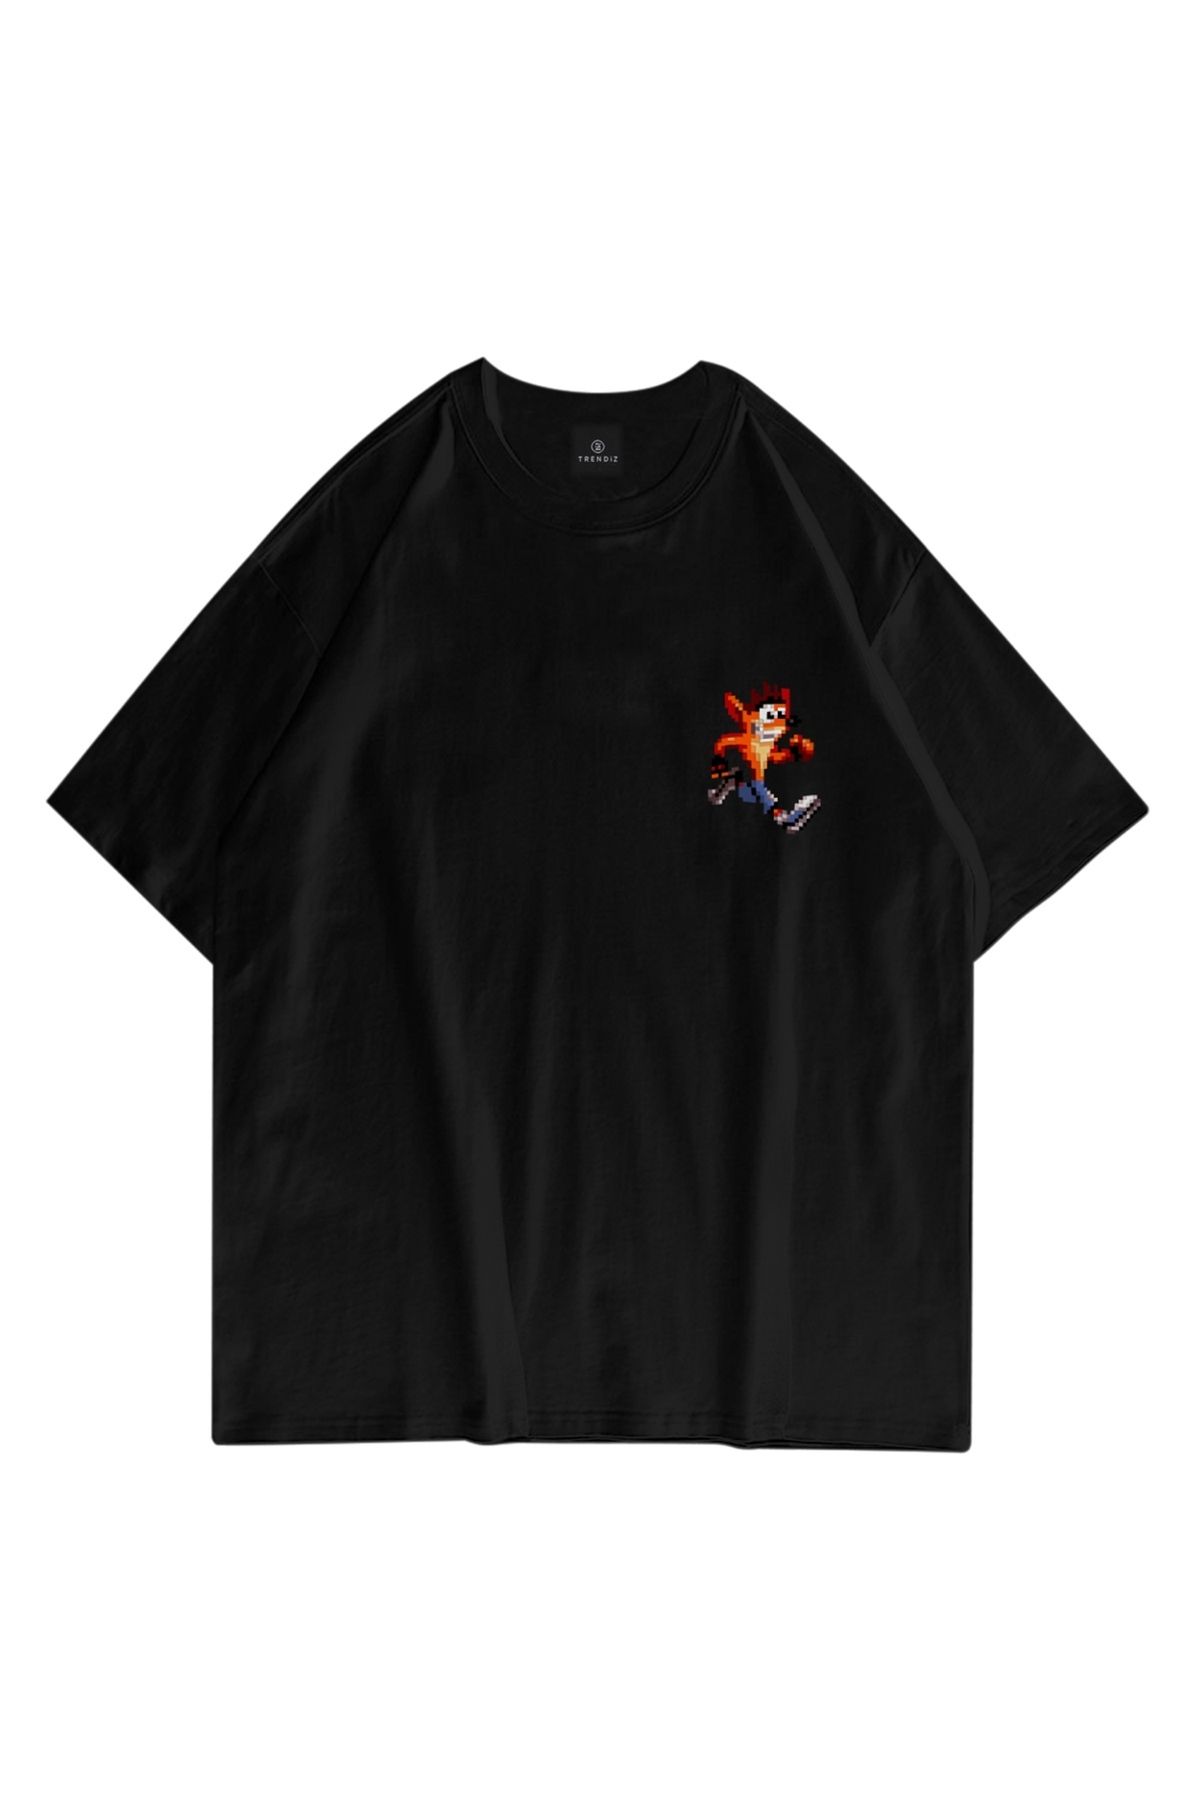 FECCY Oversize Unisex Crash Bandicoot Siyah Tshirt